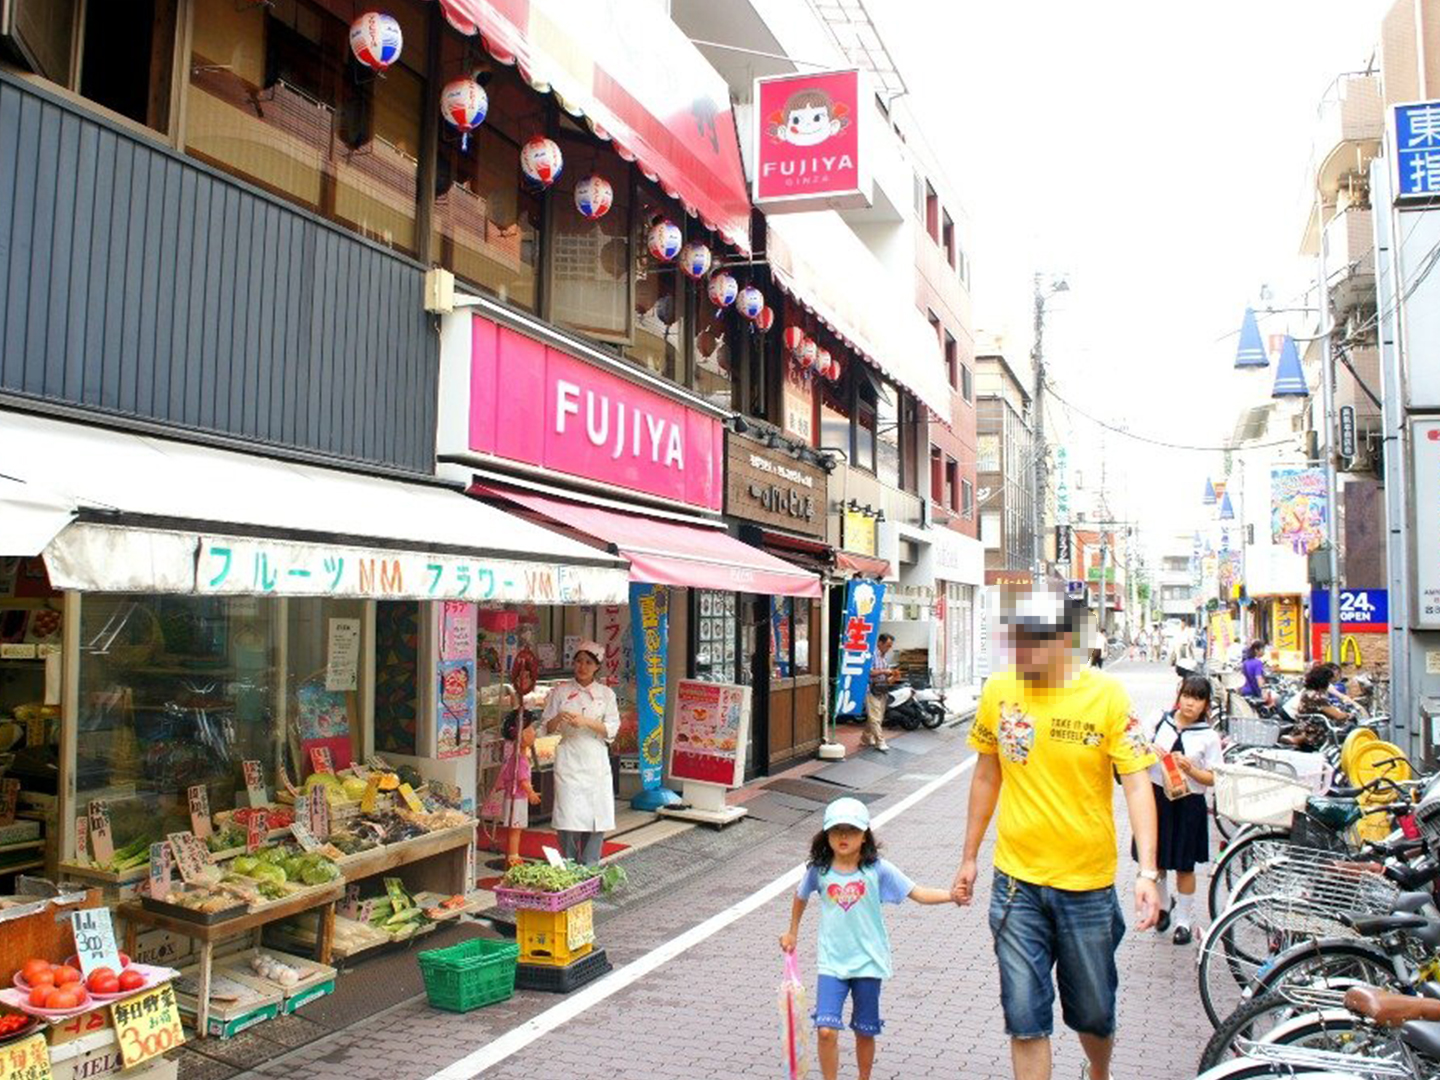 板橋区は下町情緒あふれる地域。駅前には商店街が広がる。